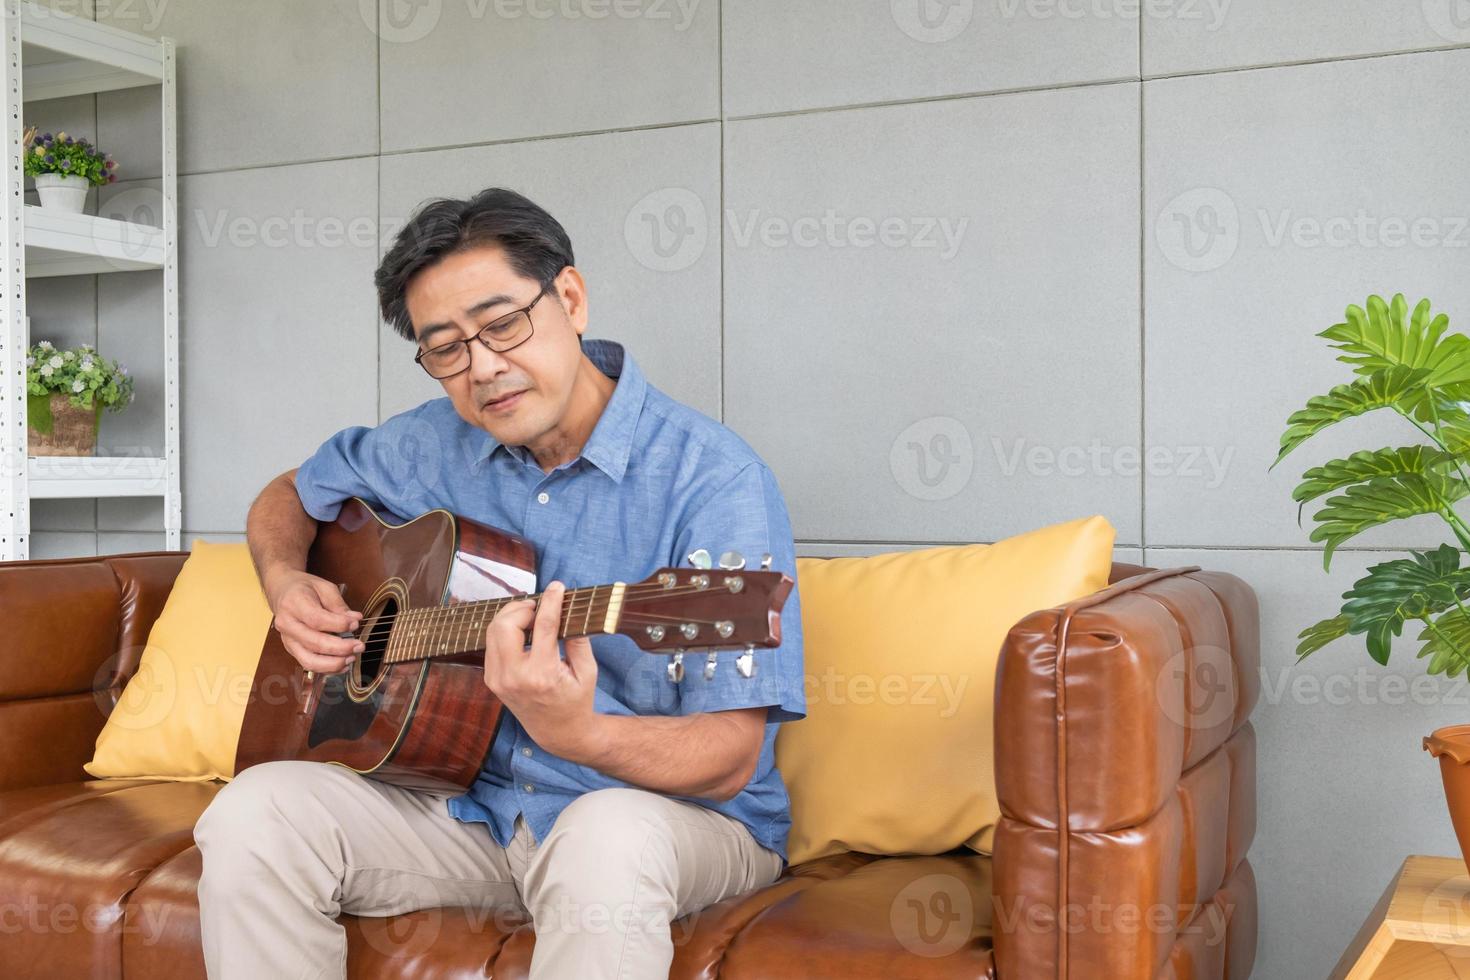 homem mais velho asiático gosta de tocar guitarra no sofá dentro da casa de decoração de interiores bem. estilo de vida sênior ativo após a aposentadoria com felicidade com boa saúde mental. foto